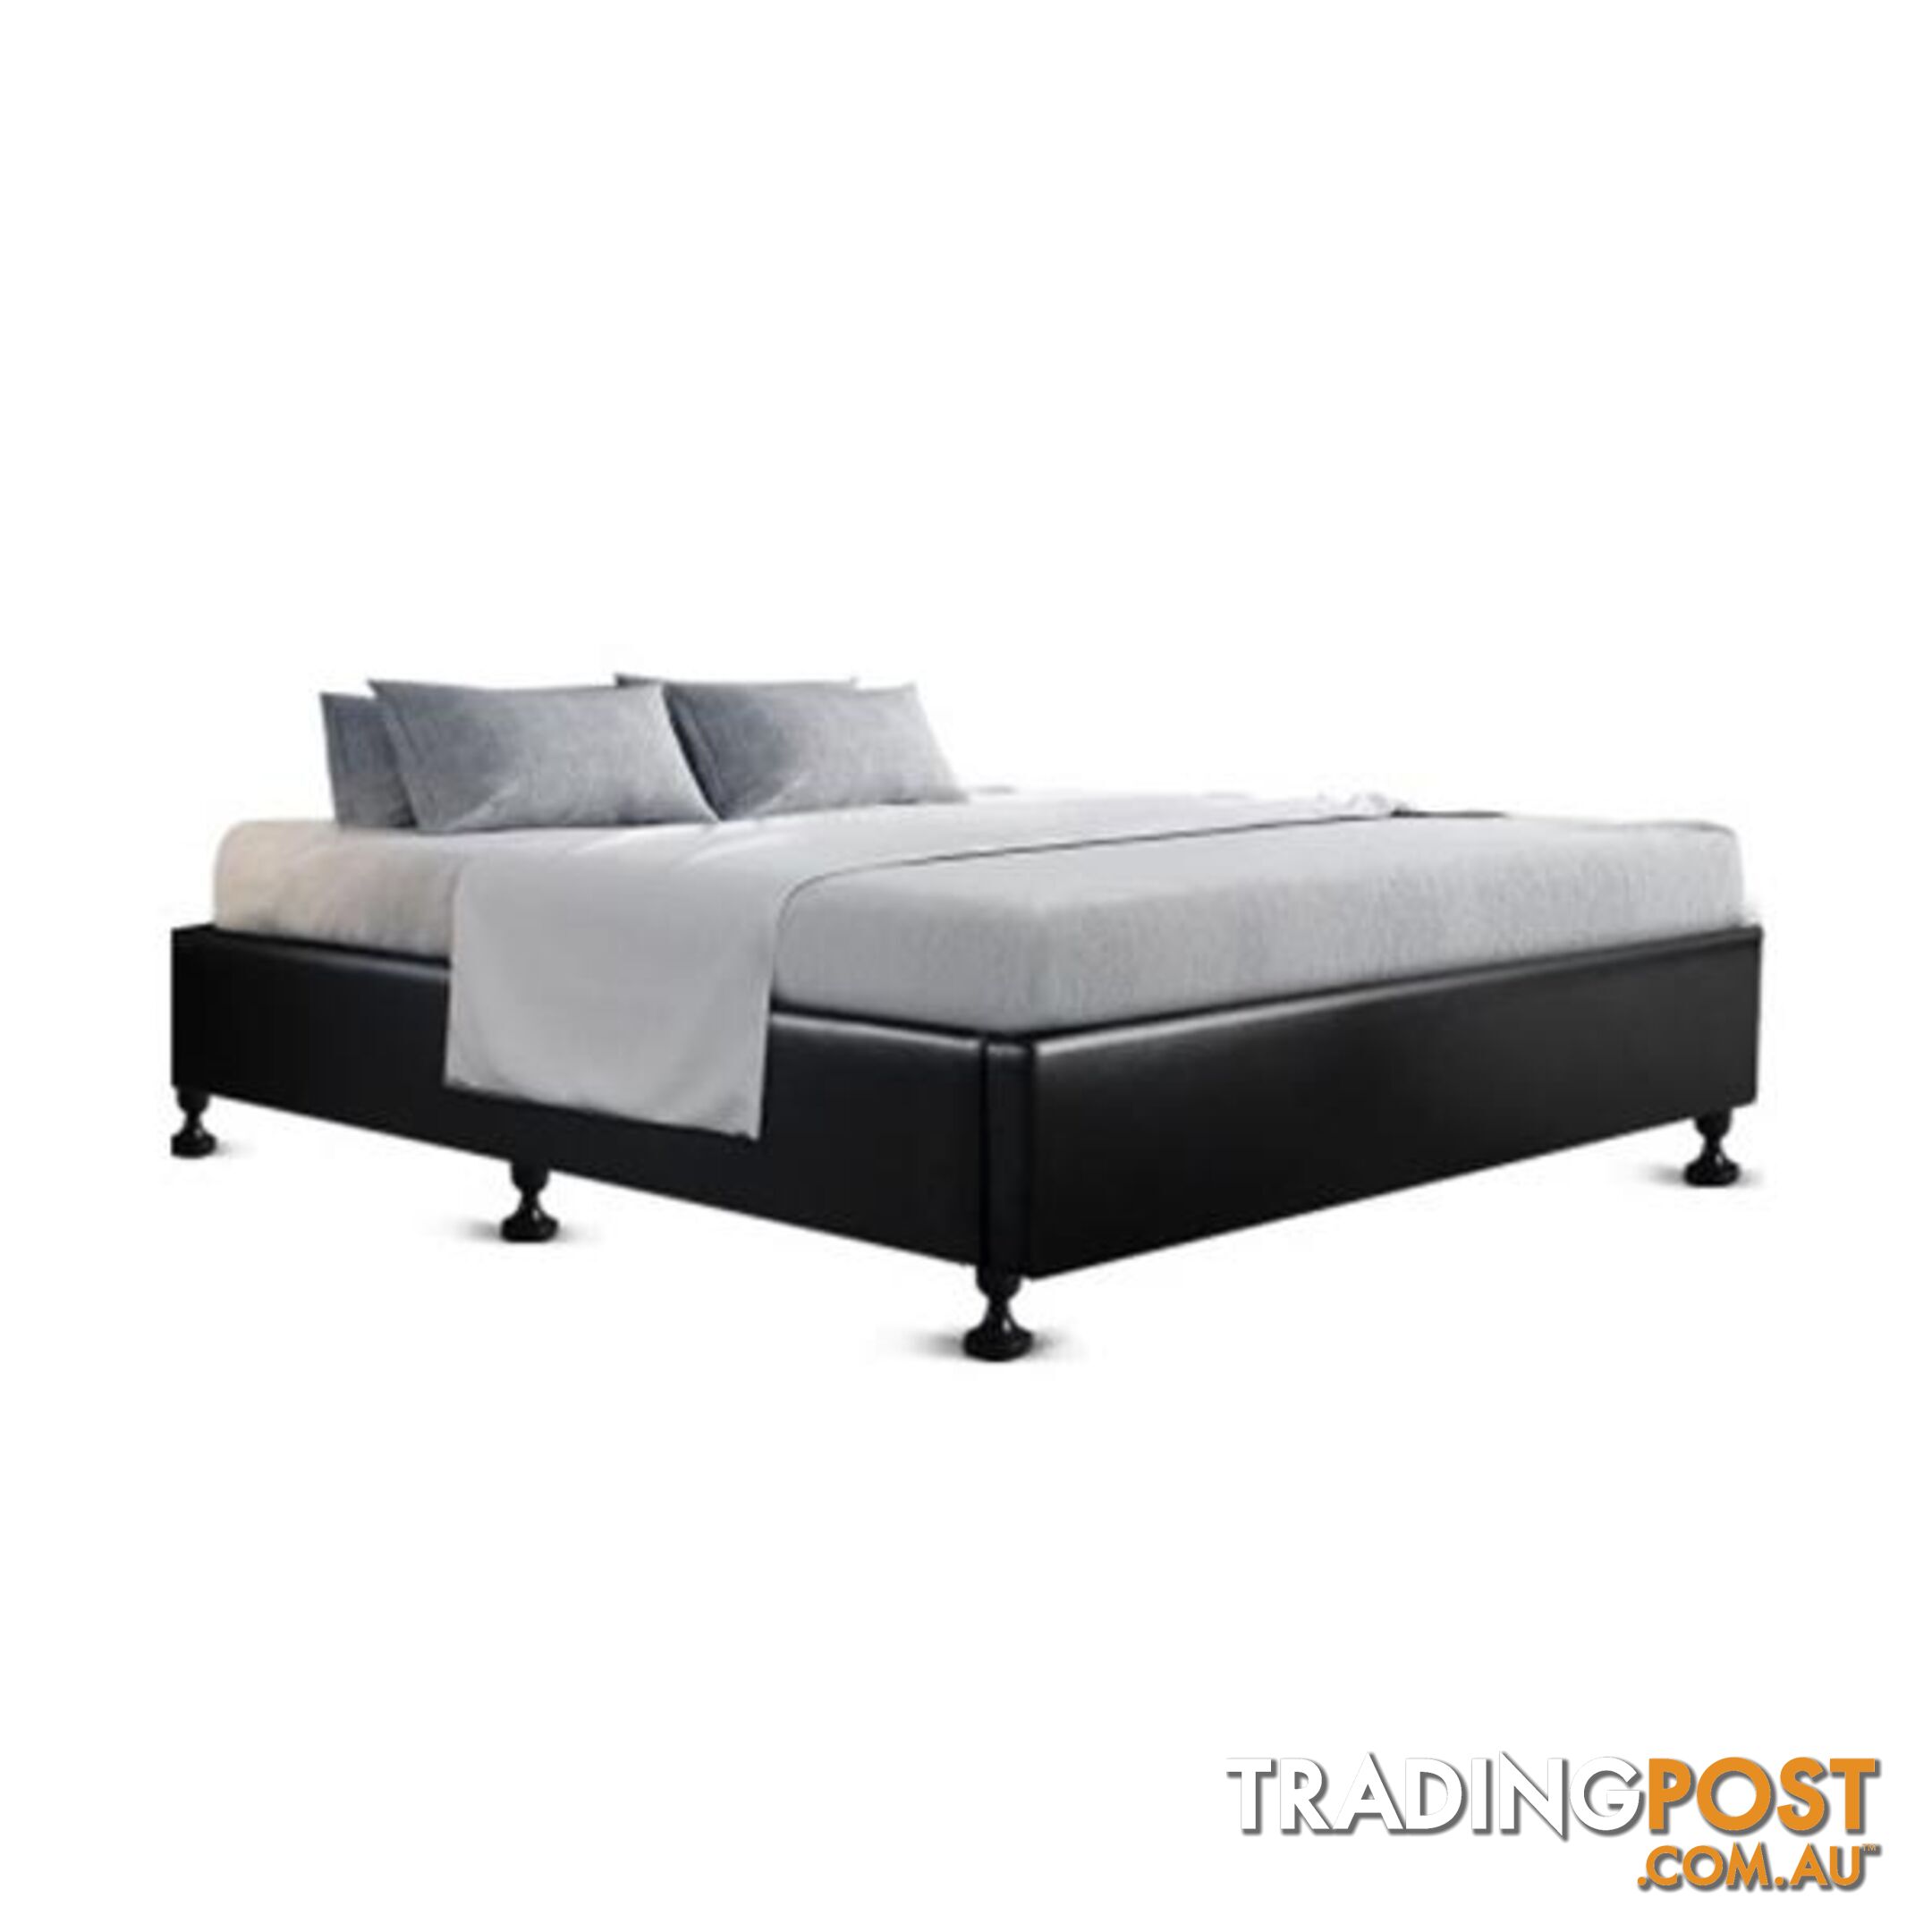 Double Full Size Bed Base Frame - Artiss - 9350062225691